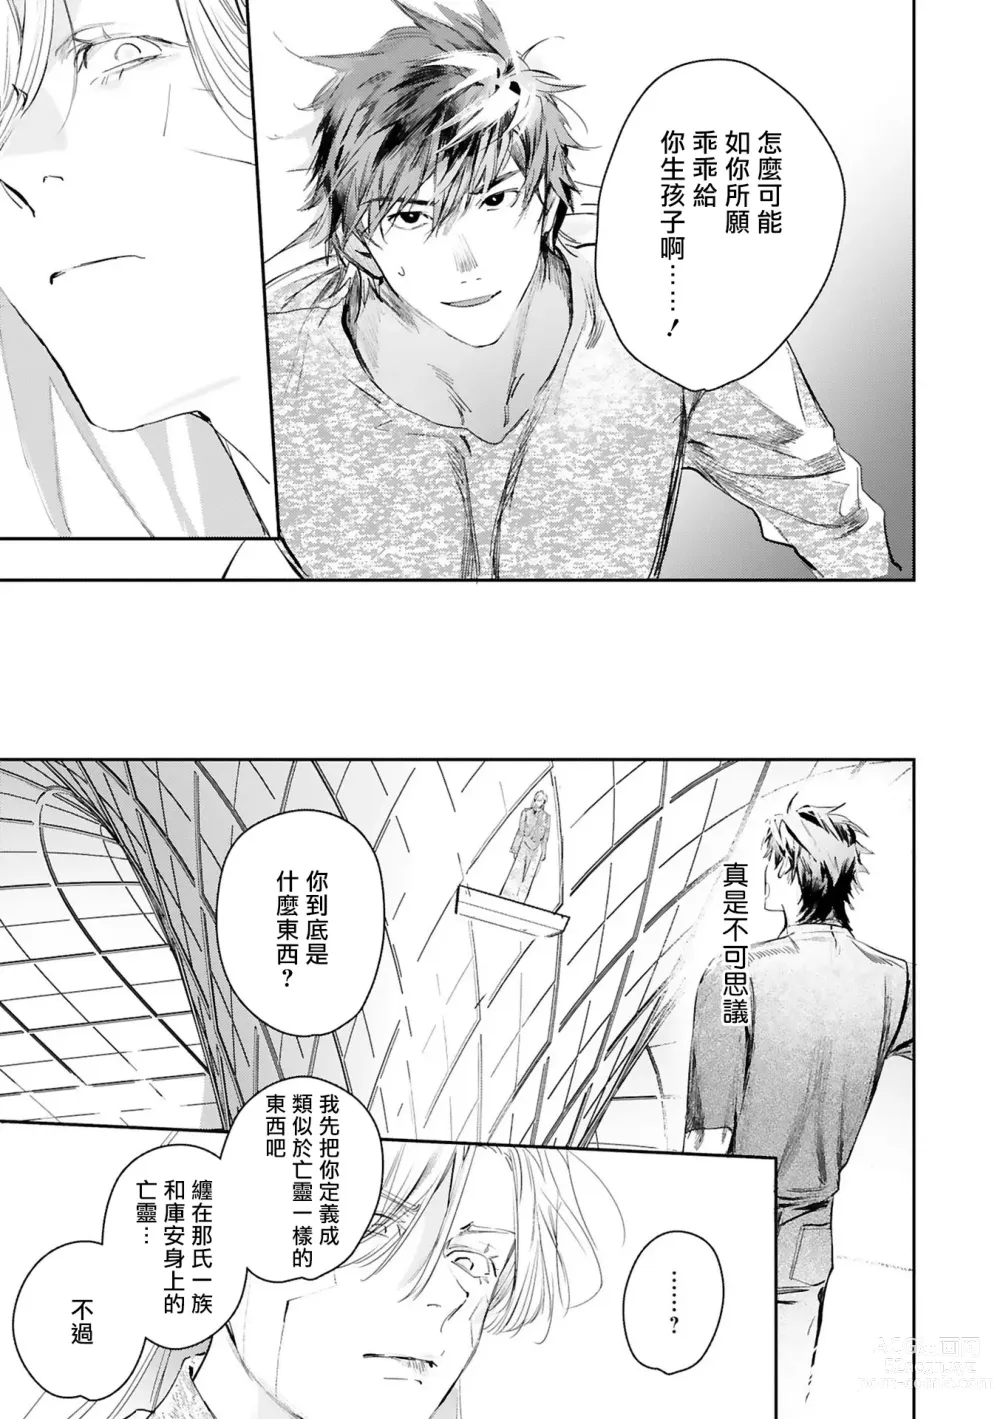 Page 430 of manga 末世青鸟 Ch. 4-10 + 特典 + 11-14